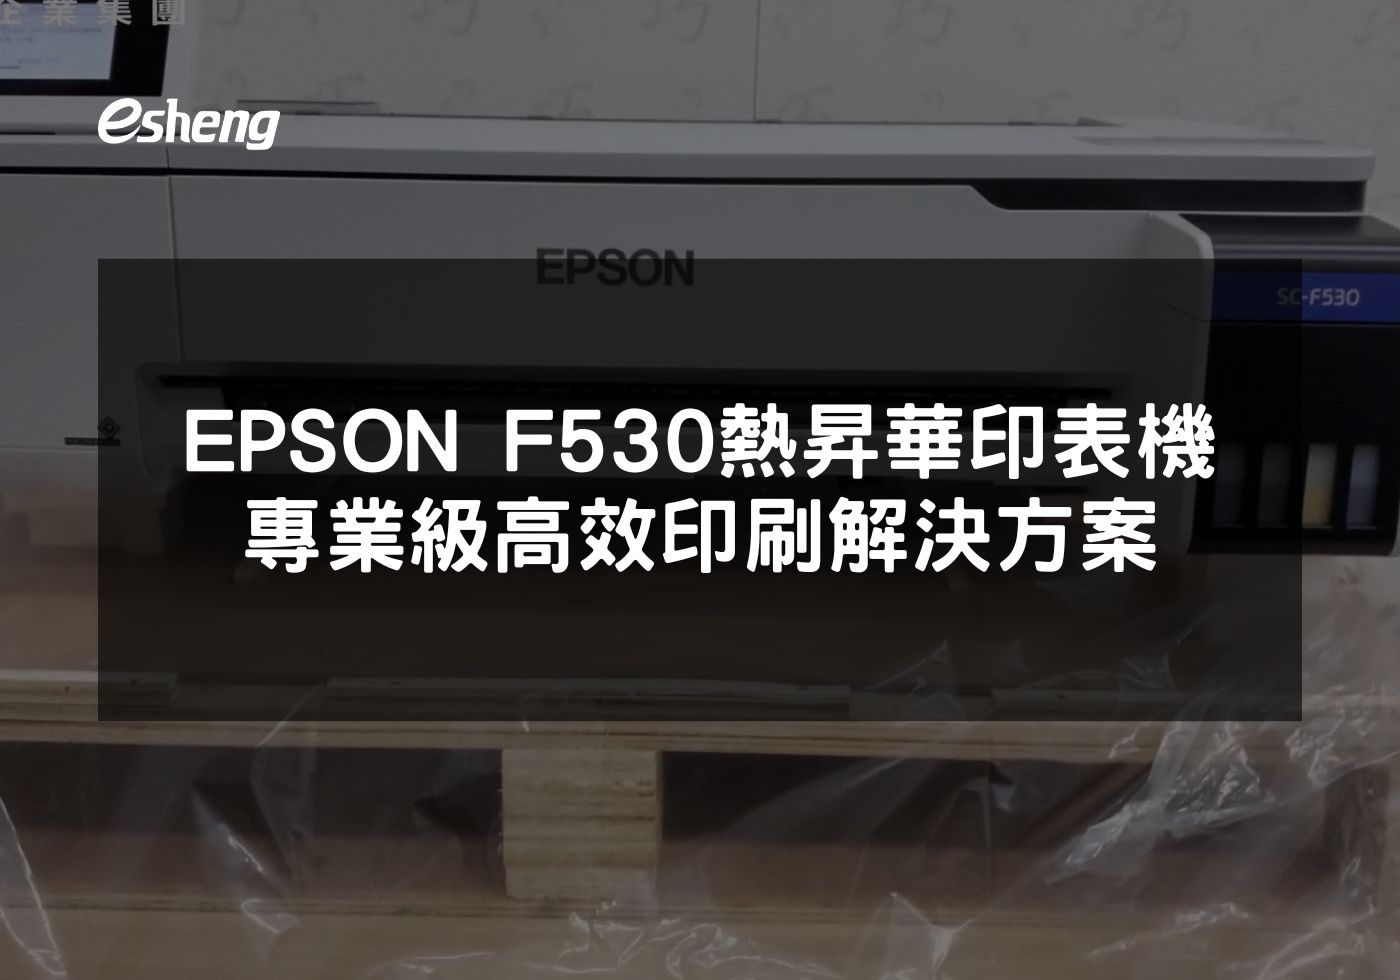 閱讀更多文章 EPSON F530熱昇華印表機 專業級高效印刷解決方案